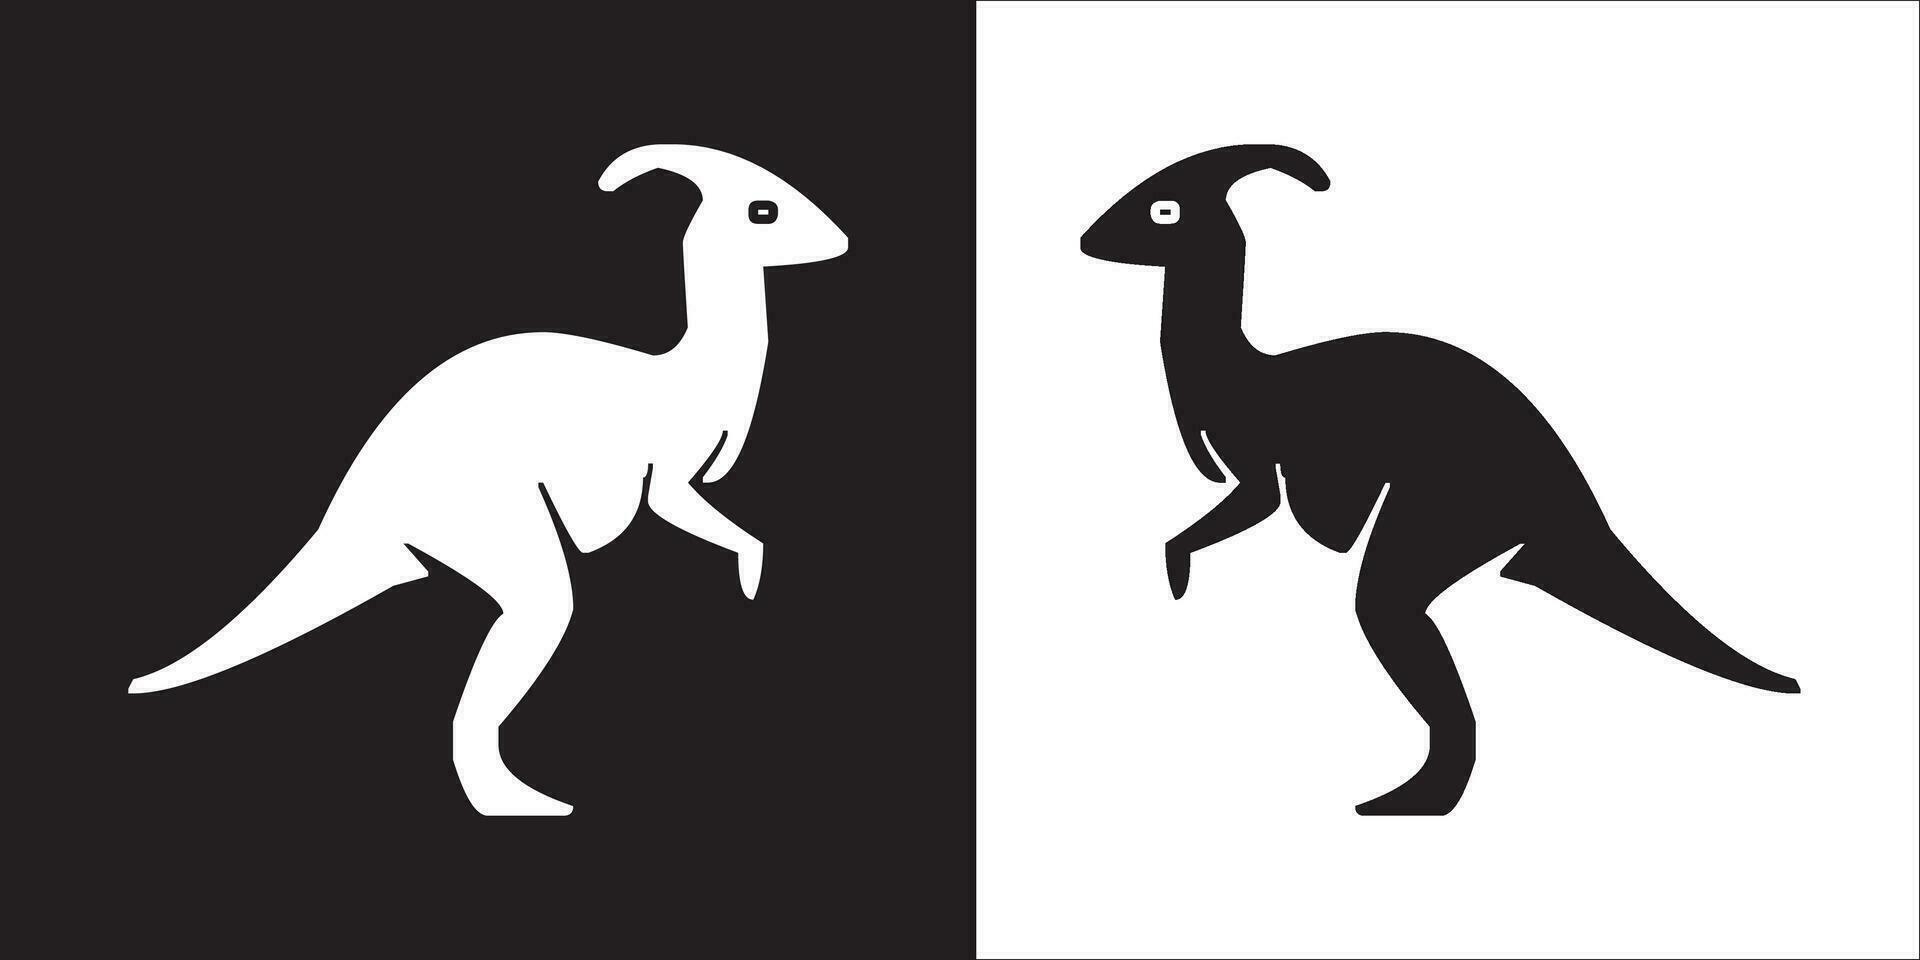 ilustración vector gráficos de dinosaurio icono